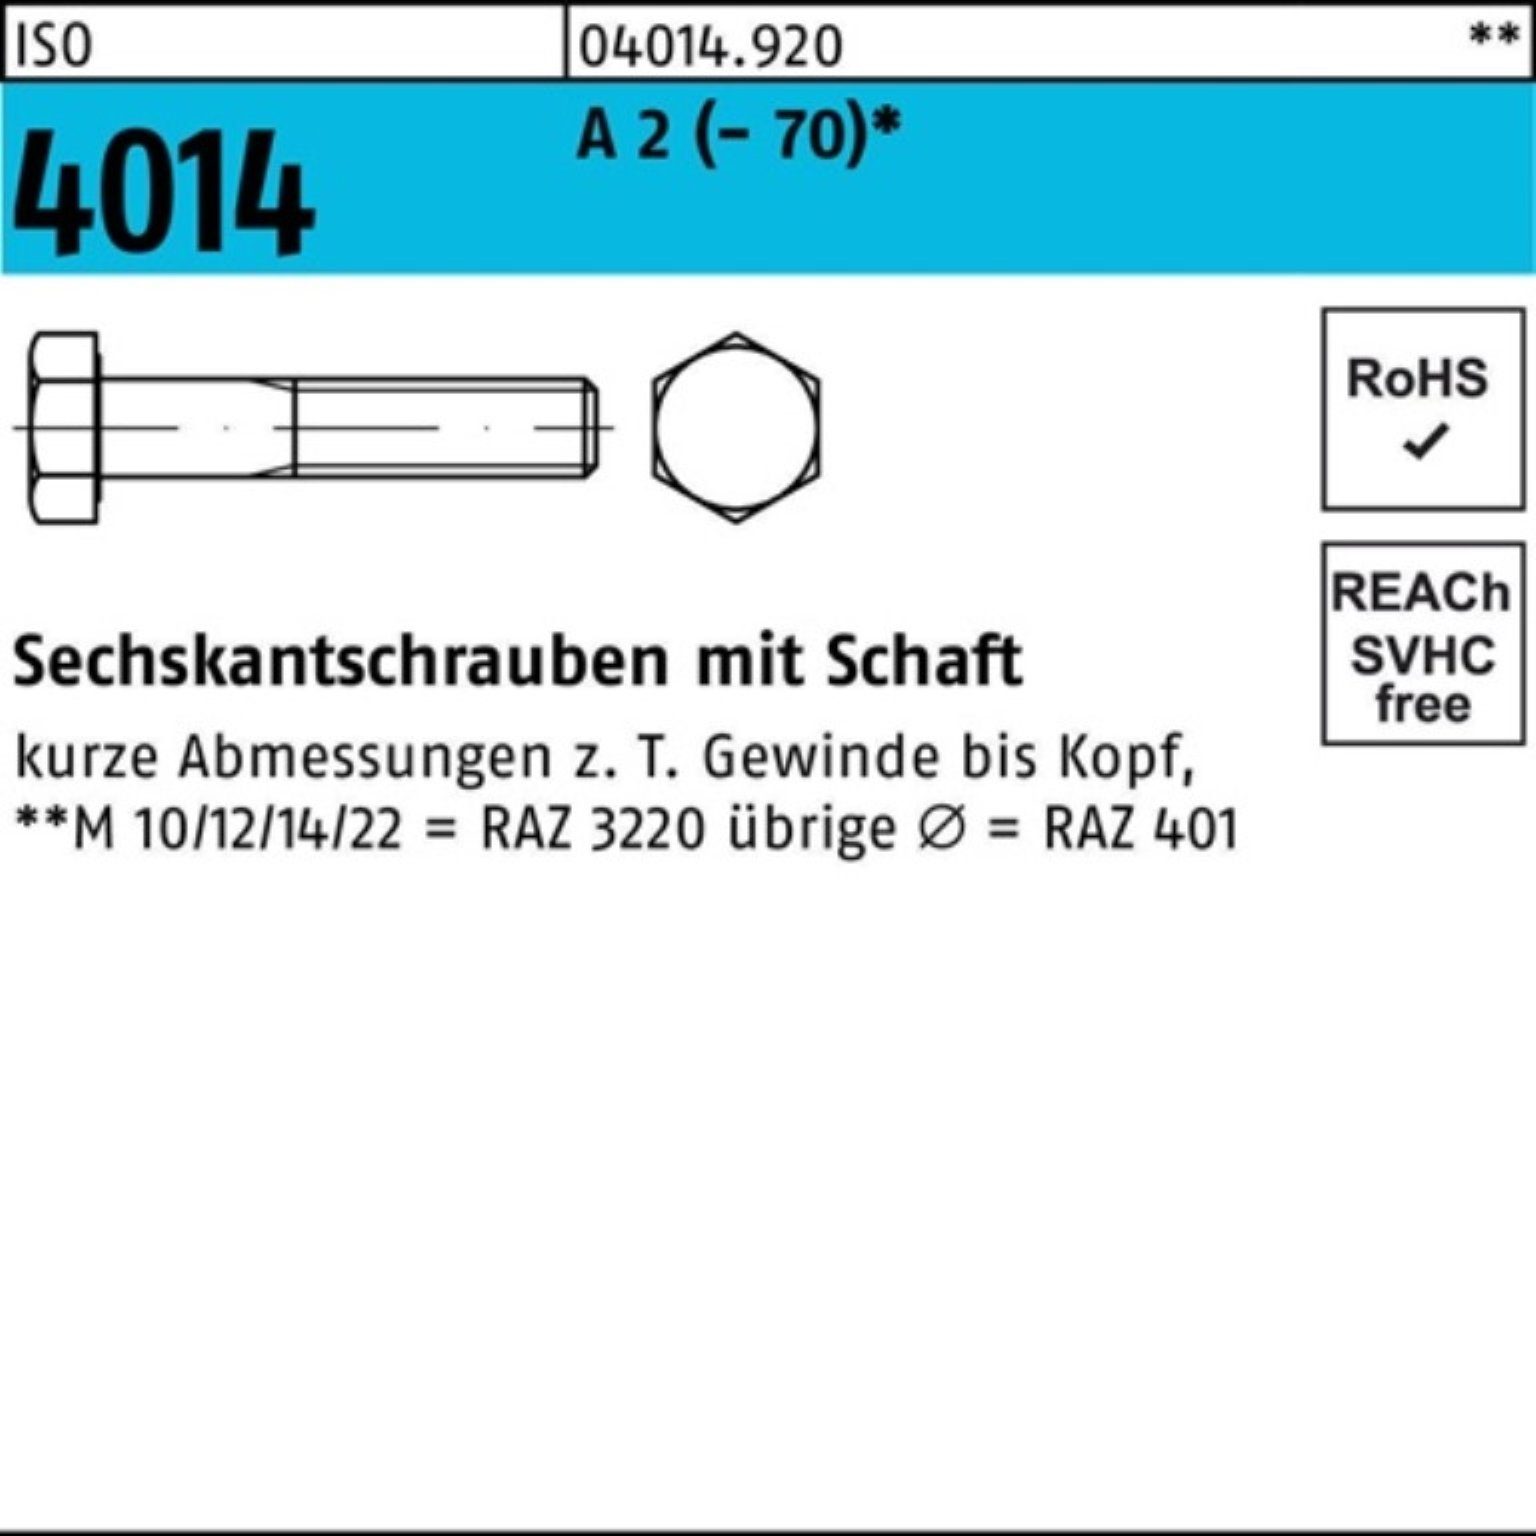 Bufab Sechskantschraube 100er Pack Sechskantschraube ISO 4014 Schaft M14x 50 A 2 (70) 100 St